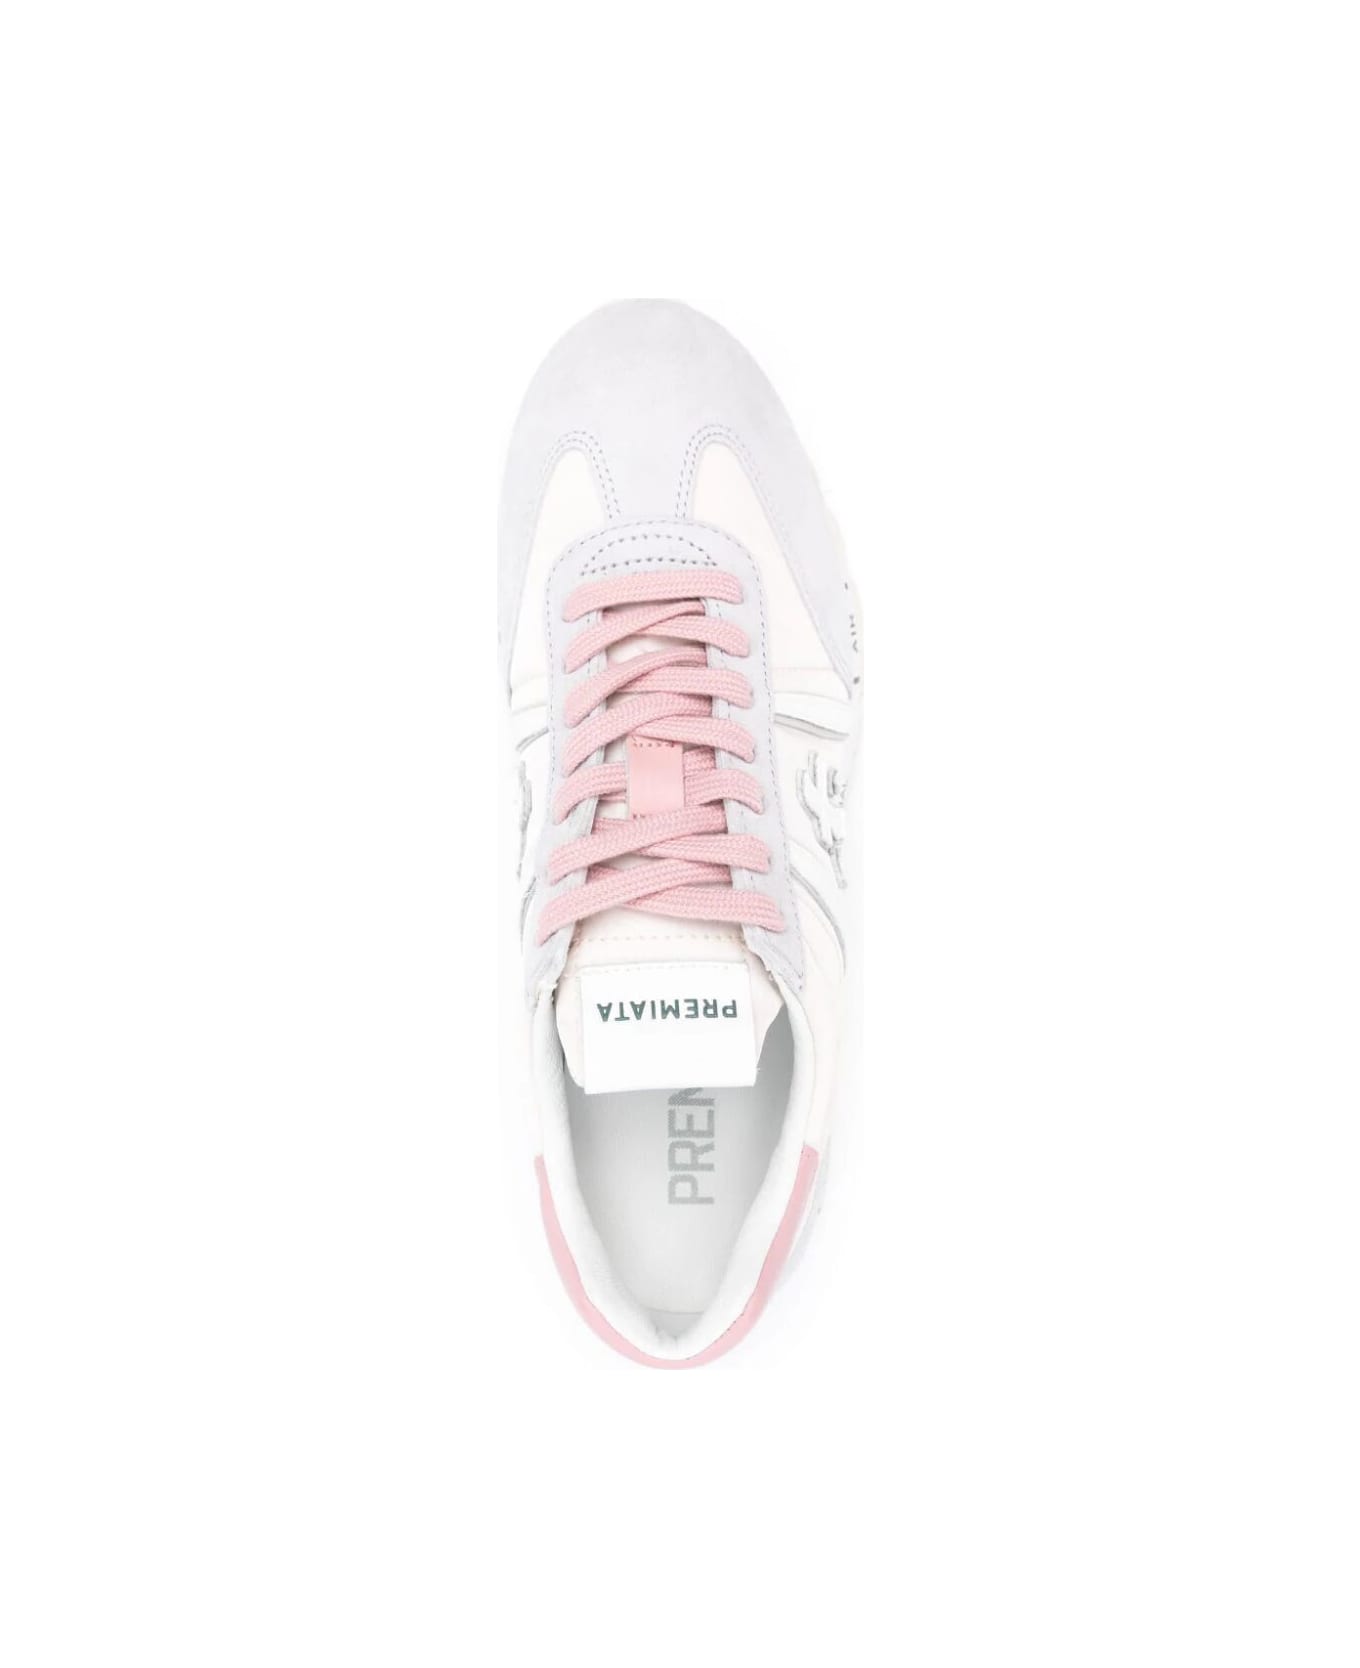 Premiata Lucyd Bi Material Sneakers - Pink スニーカー